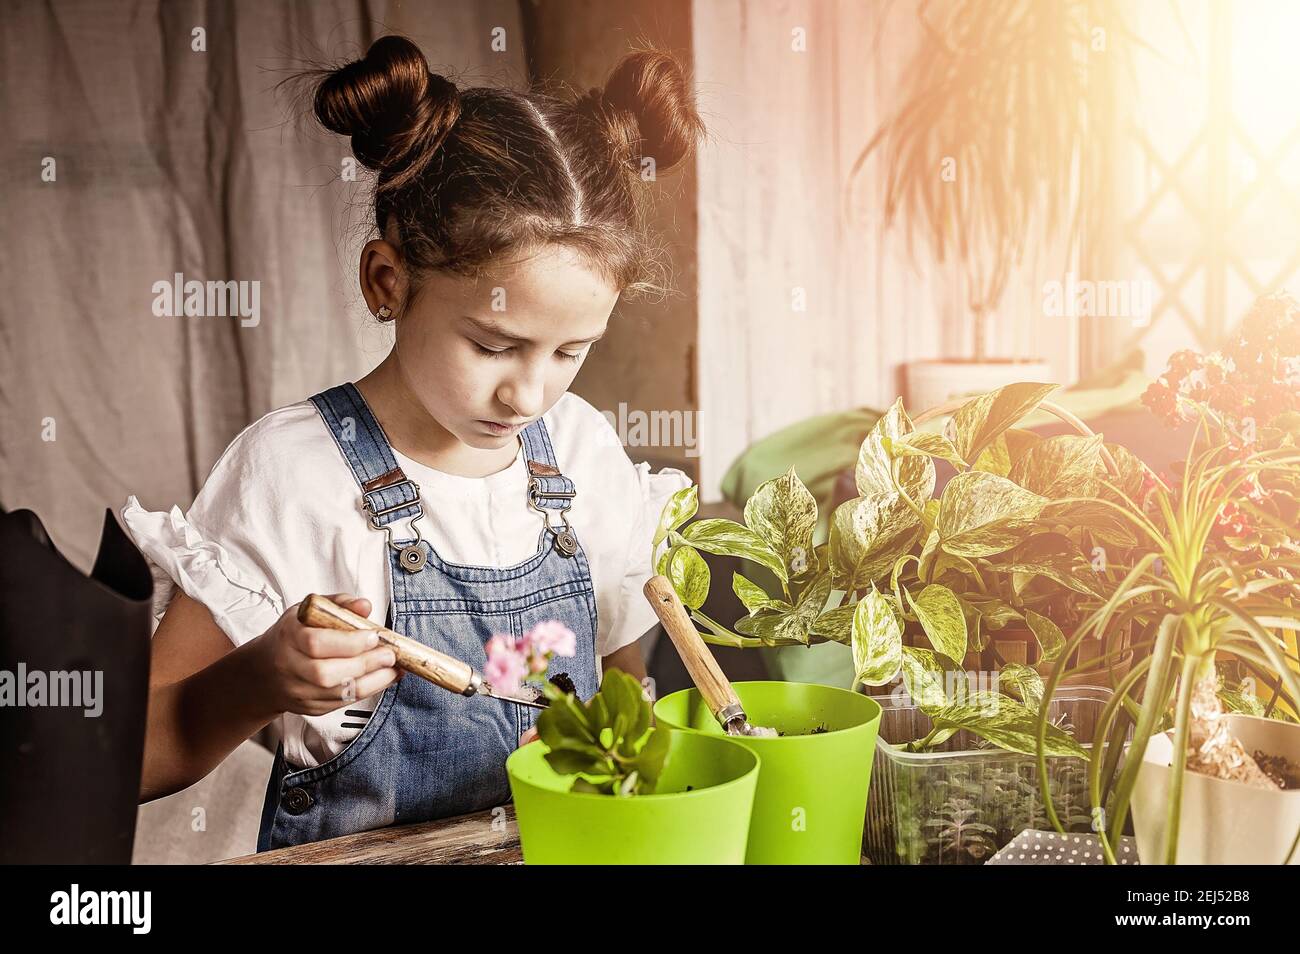 petite belle fille concentrée est de planter des fleurs dans un pot de fleurs. jardinage de printemps à la maison. origine caucasienne. vue de face. Banque D'Images